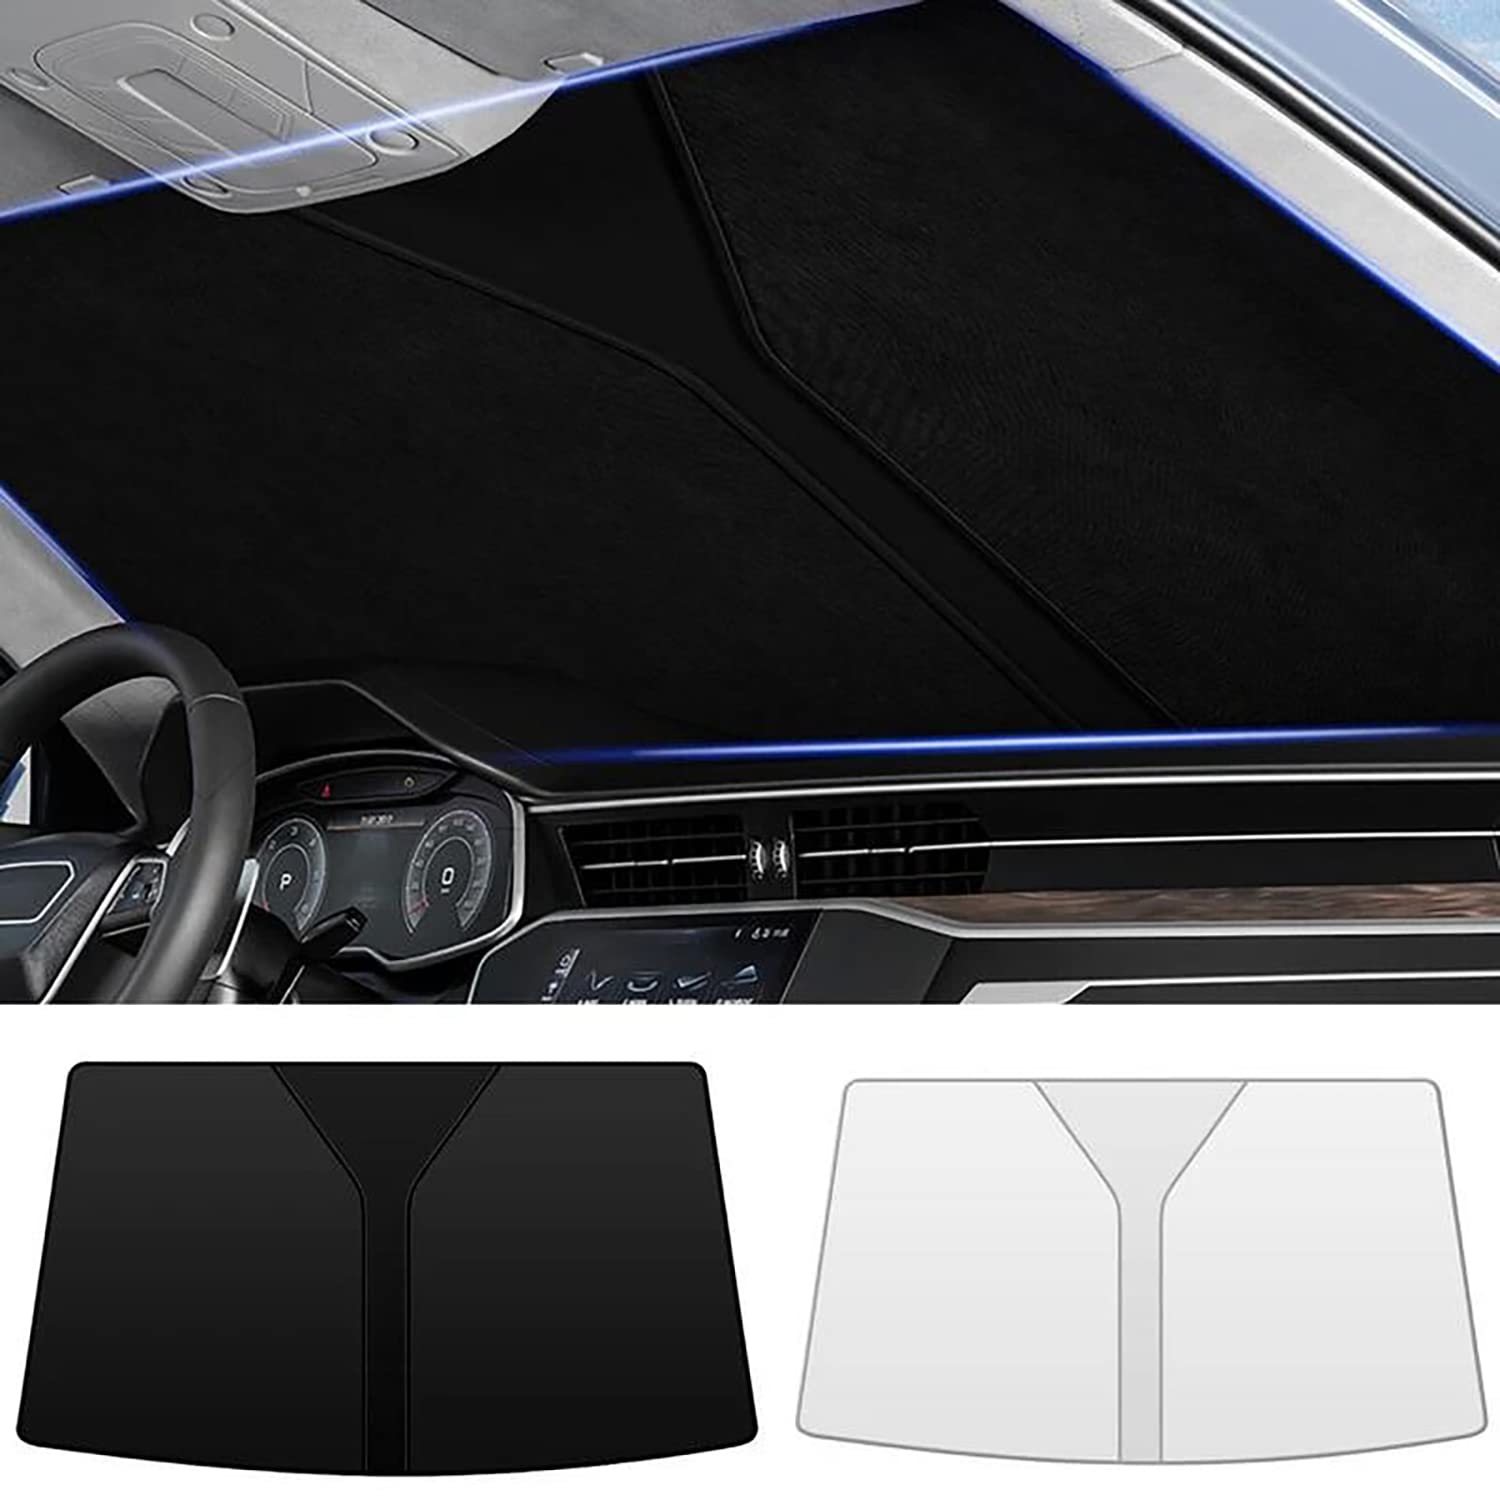 Frontscheiben Sonnenschutz Passend für Audi A6 C8 Avant 2018 2019 2020 2021 2022 2023, Hitzeschutz Auto UV-Reflexion, Faltbares Design, Einfache Lagerung,- Black von TANEND